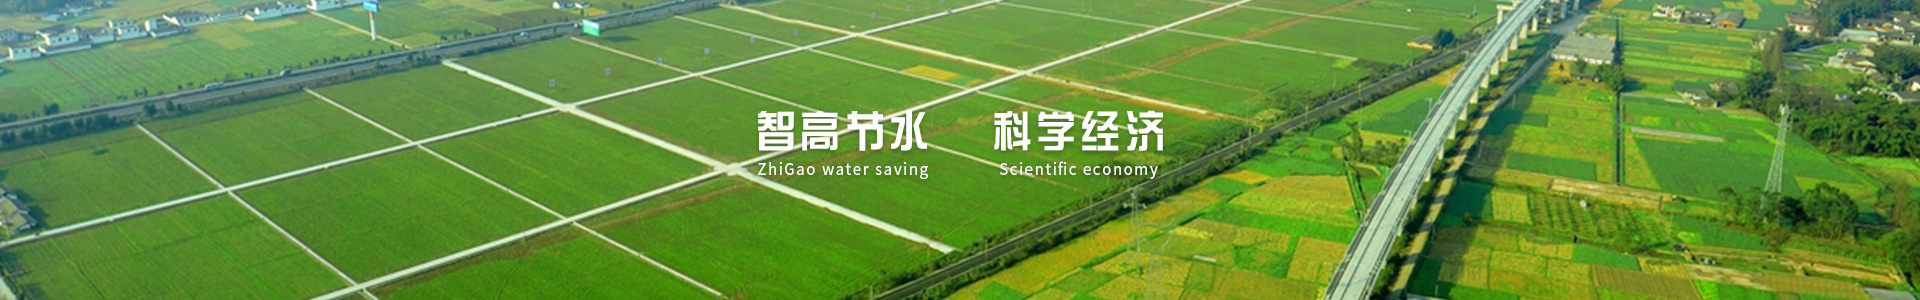 西安节水灌溉,西安灌溉设备